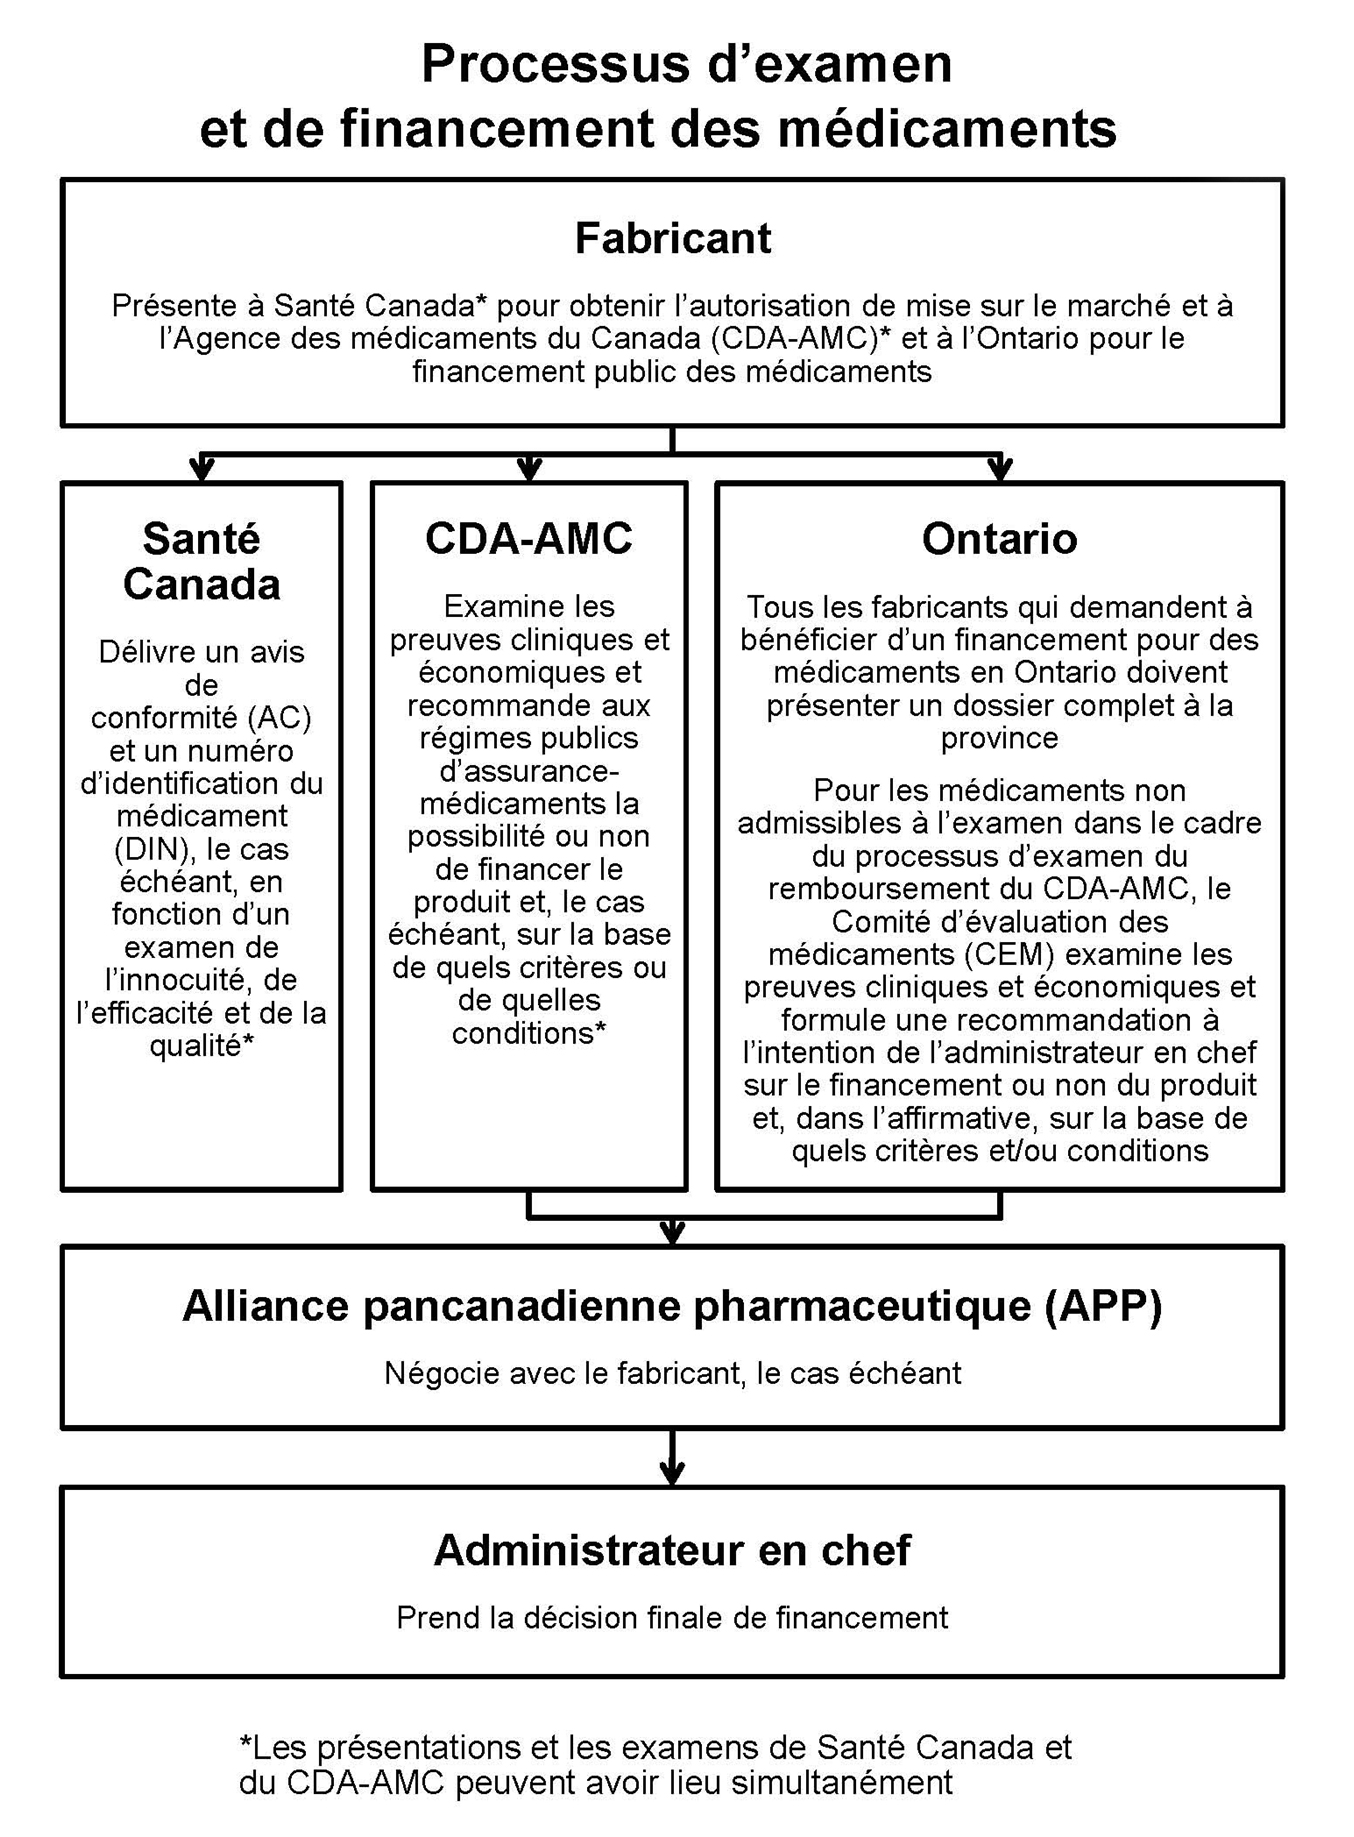 Fabricant : Présente à Santé Canada* pour obtenir l’autorisation de mise sur le marché et à l’Agence canadienne des médicaments et des technologies de la santé (ACMTS)* et à l’Ontario pour le financement public des médicaments